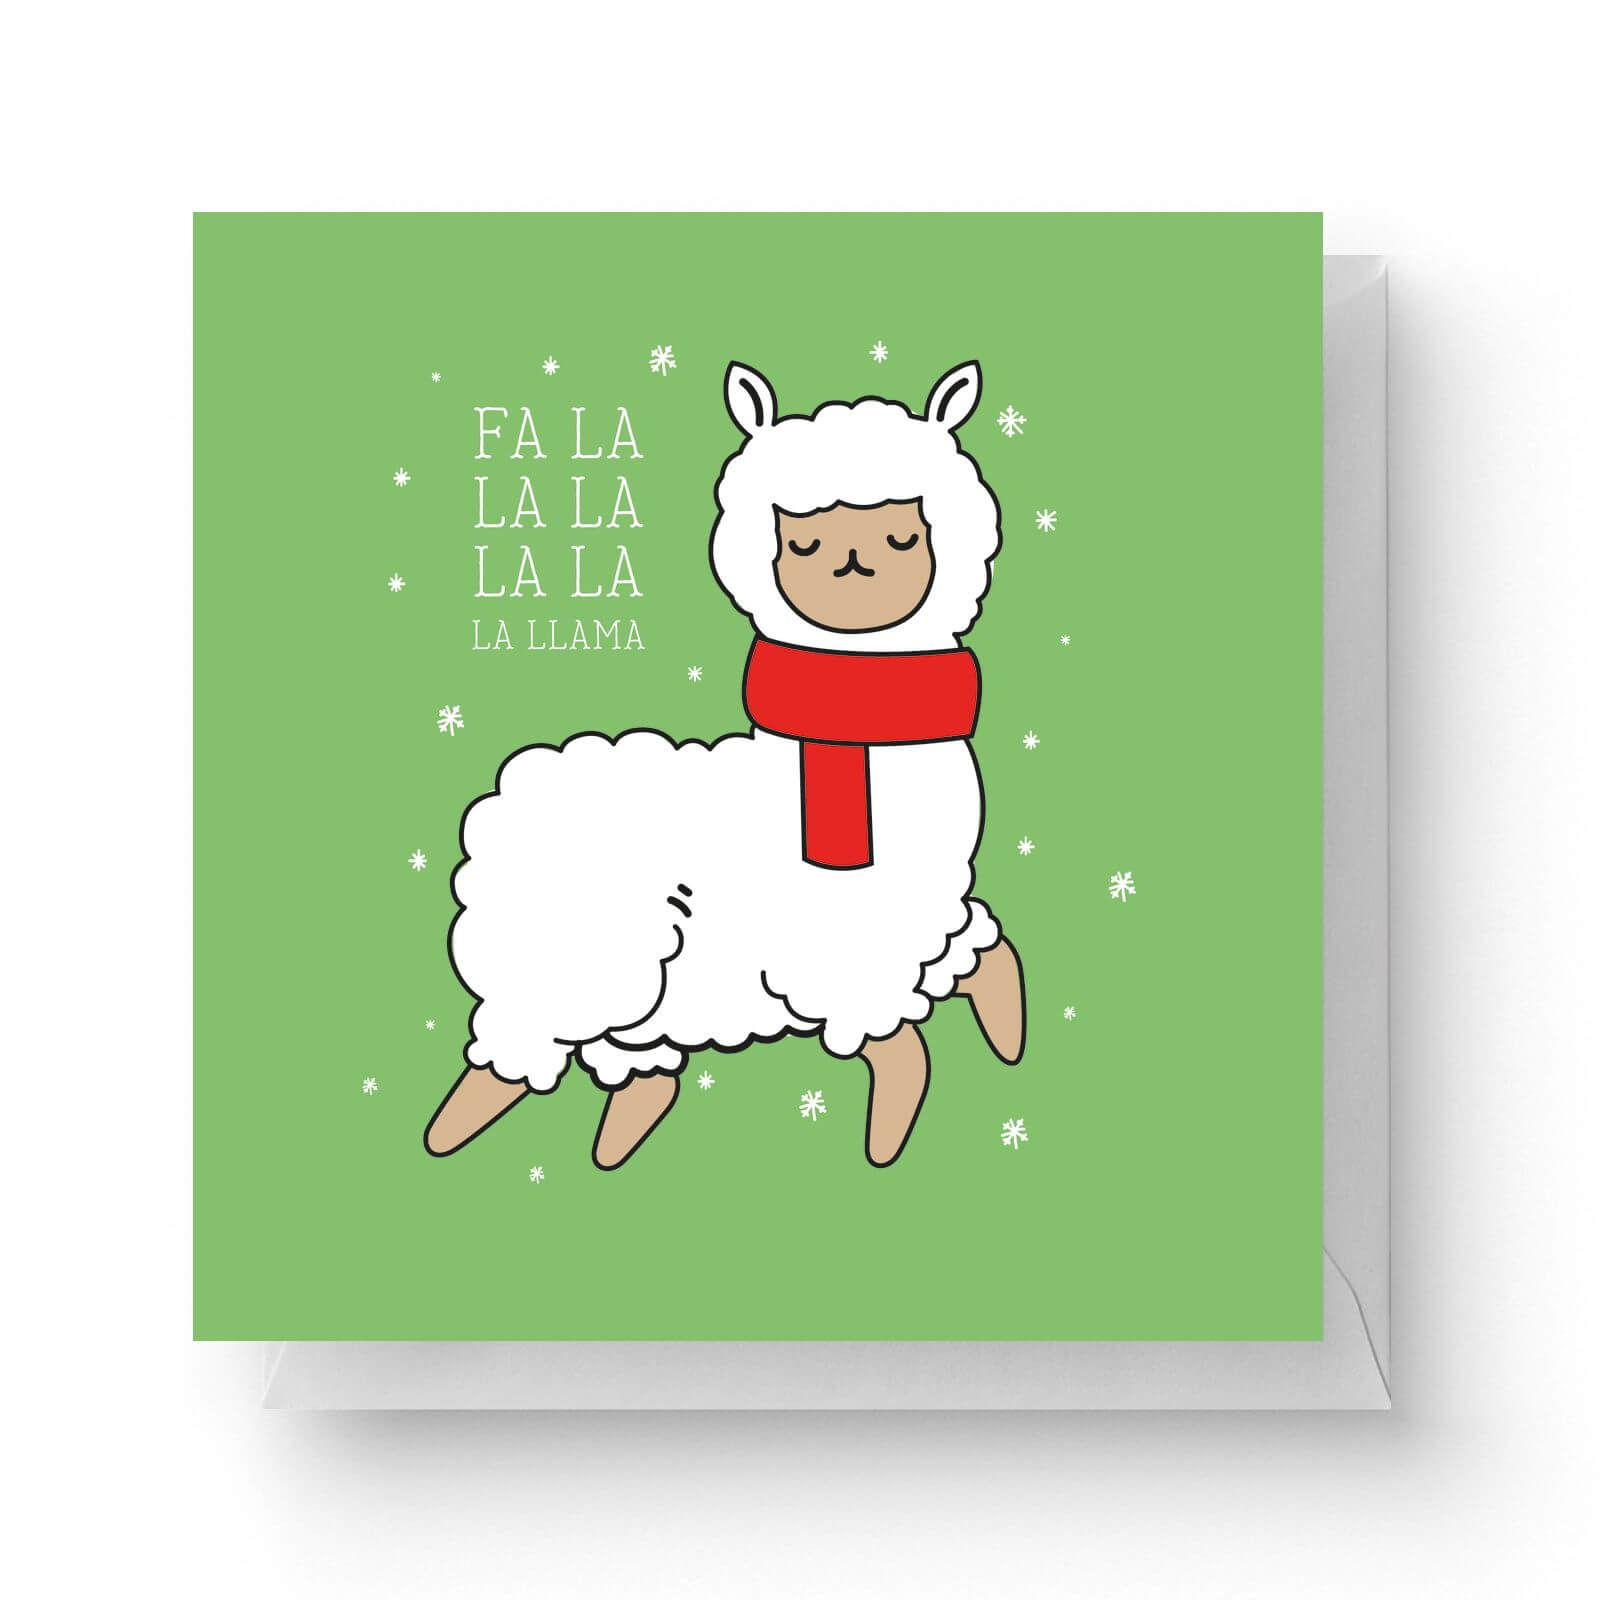 Fa La La La La La Llama Square Greetings Card 148cm X 148cm